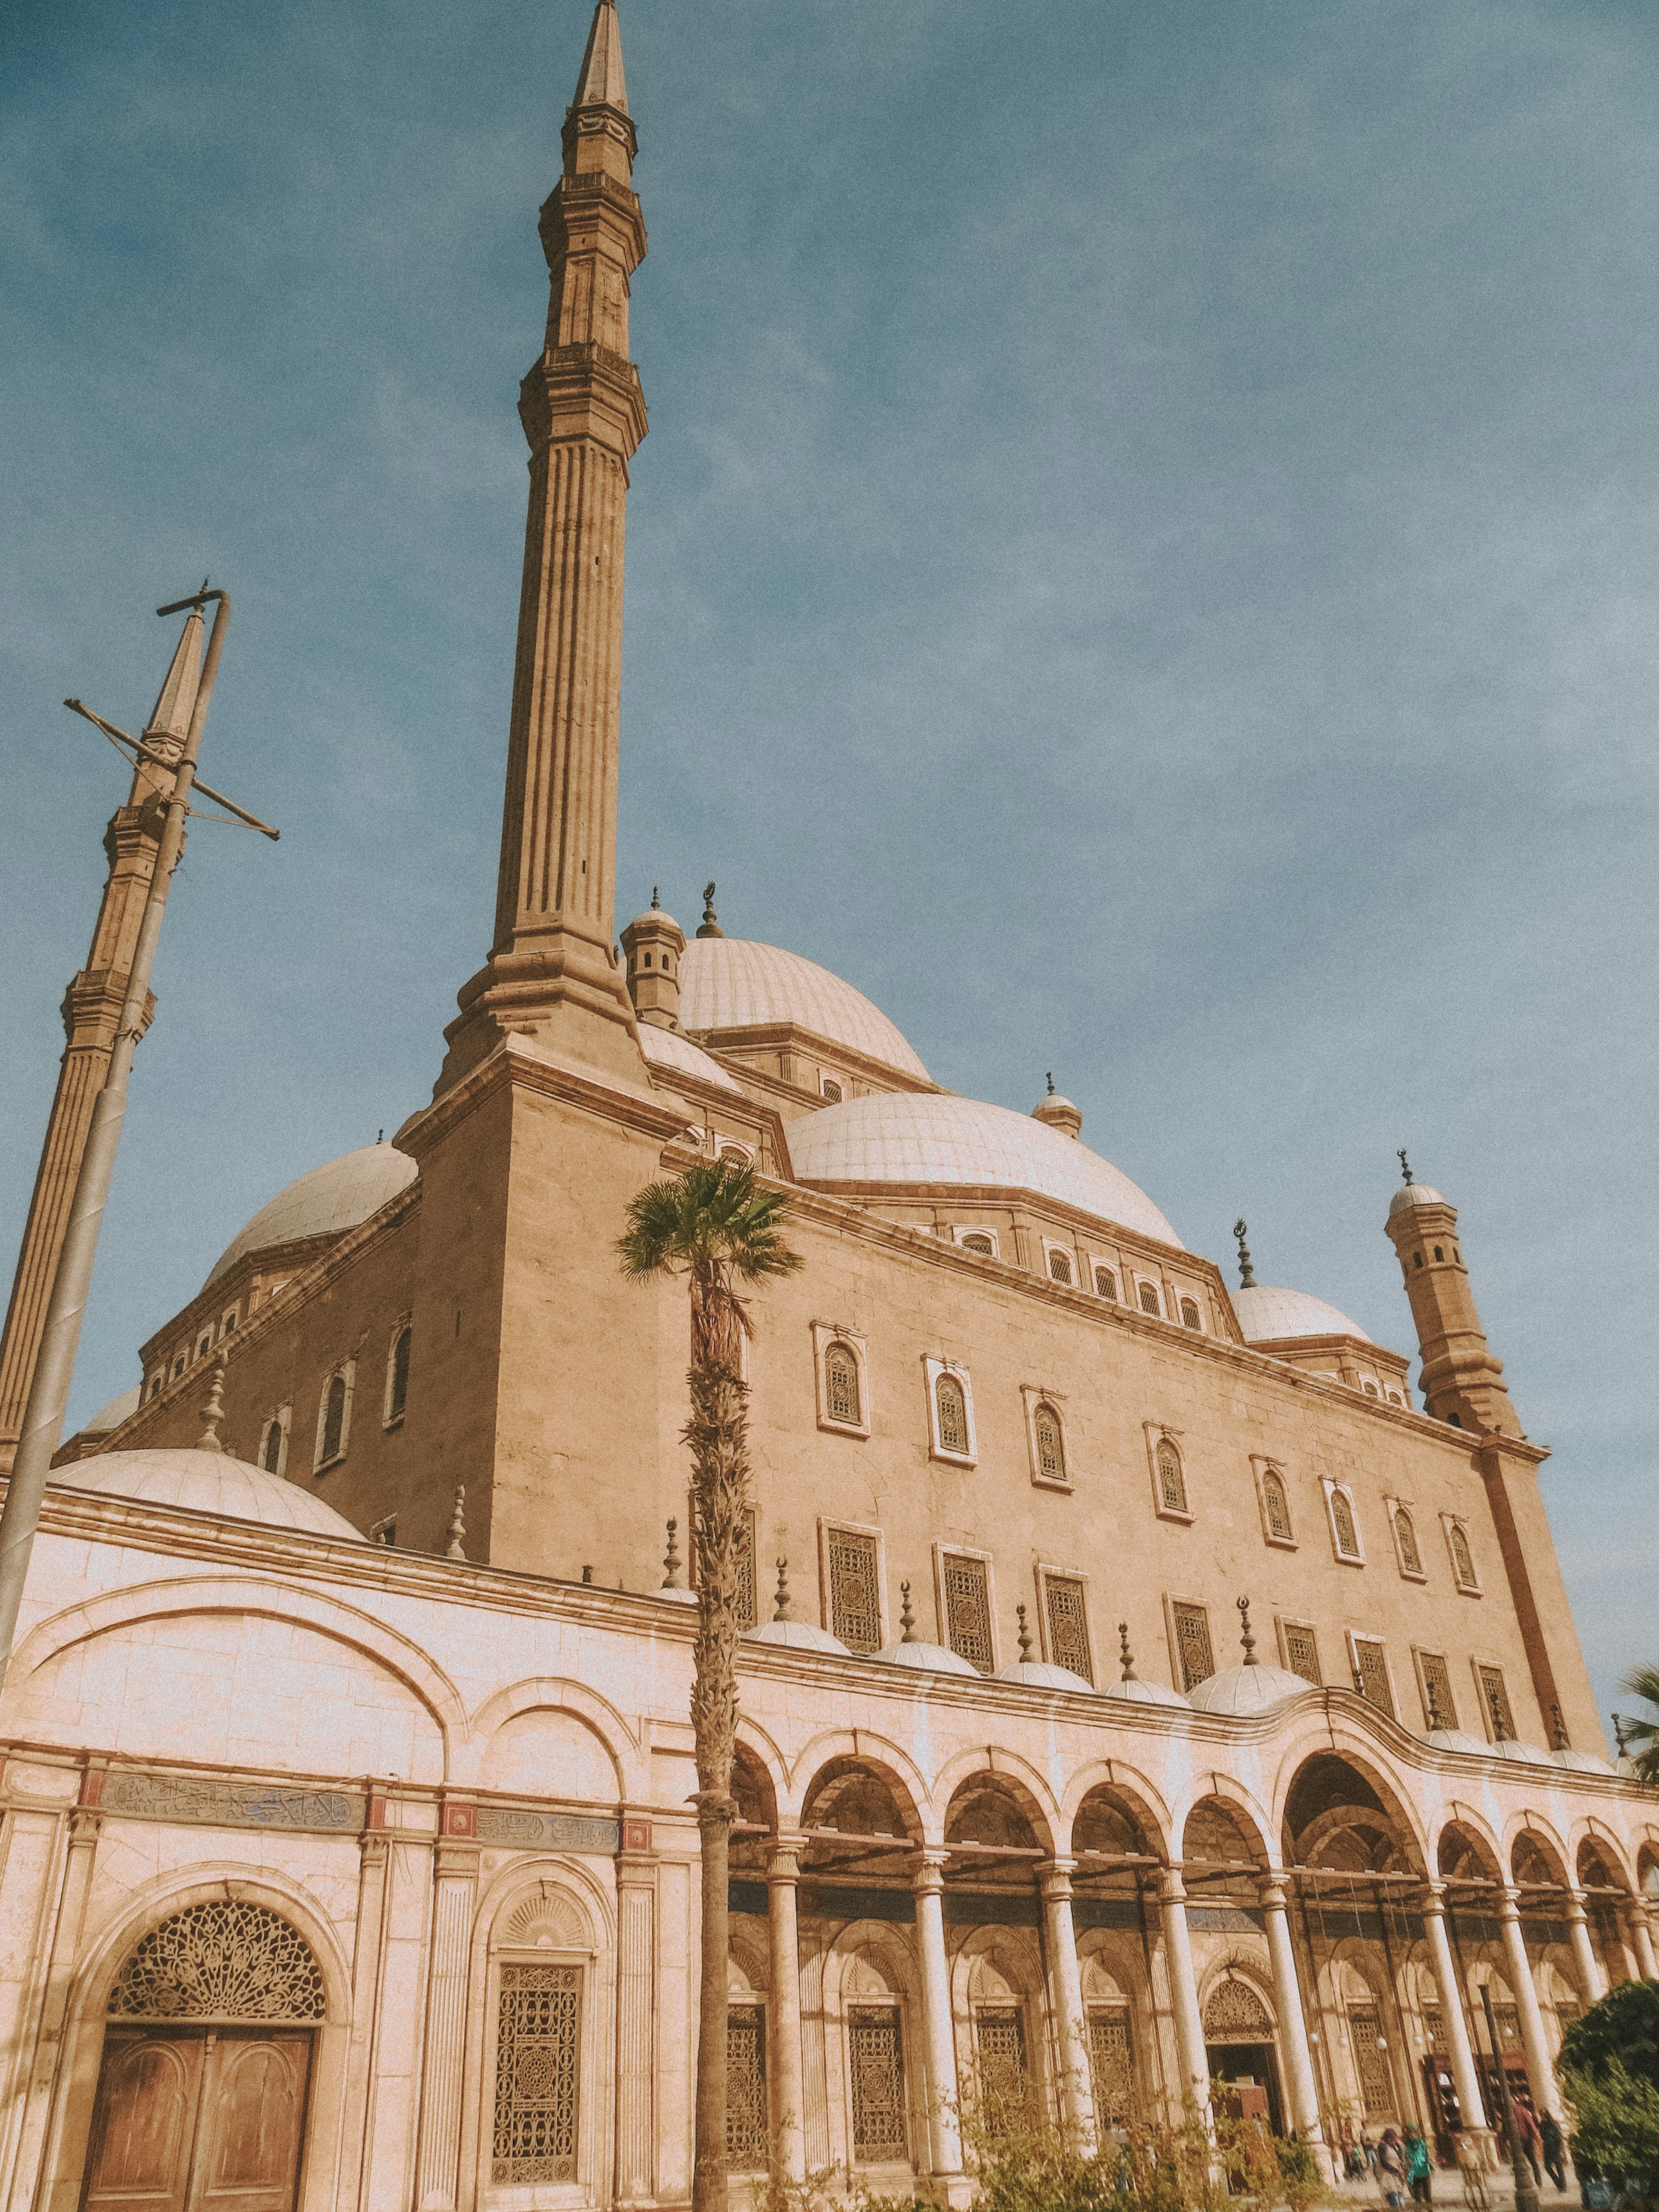 Imponerande moské med kupol och minareter i Kairo mot en klarblå himmel i dagsljus, arkitektoniska detaljer och besökare i förgrunden.